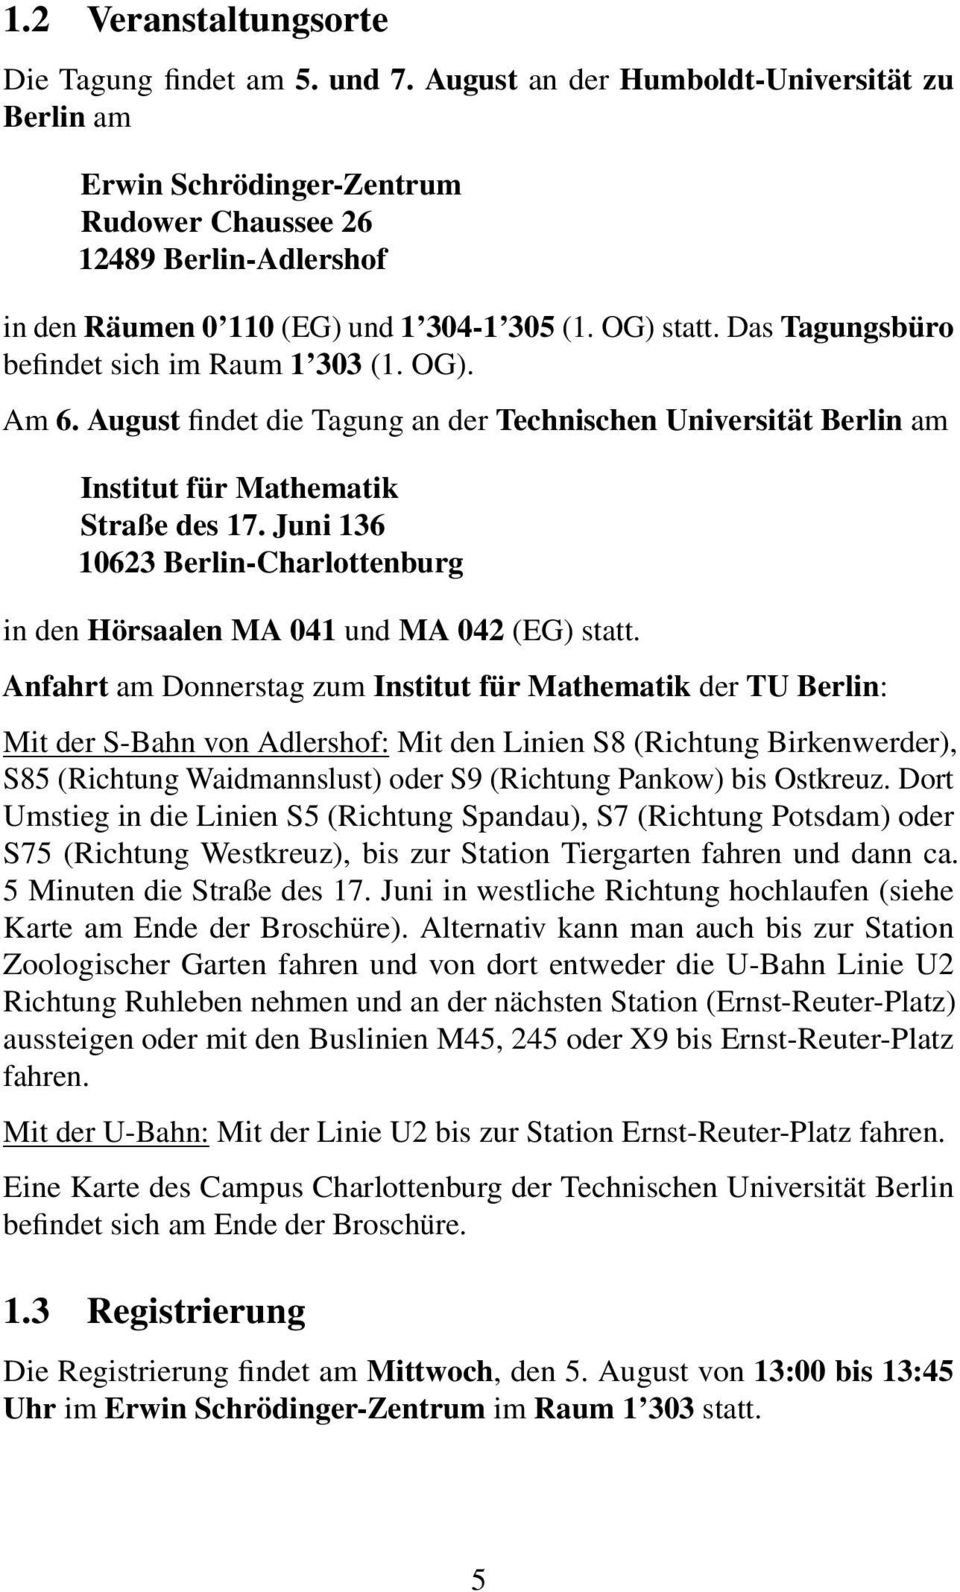 Das Tagungsbüro befindet sich im Raum 1 303 (1. OG). Am 6. August findet die Tagung an der Technischen Universität Berlin am Institut für Mathematik Straße des 17.